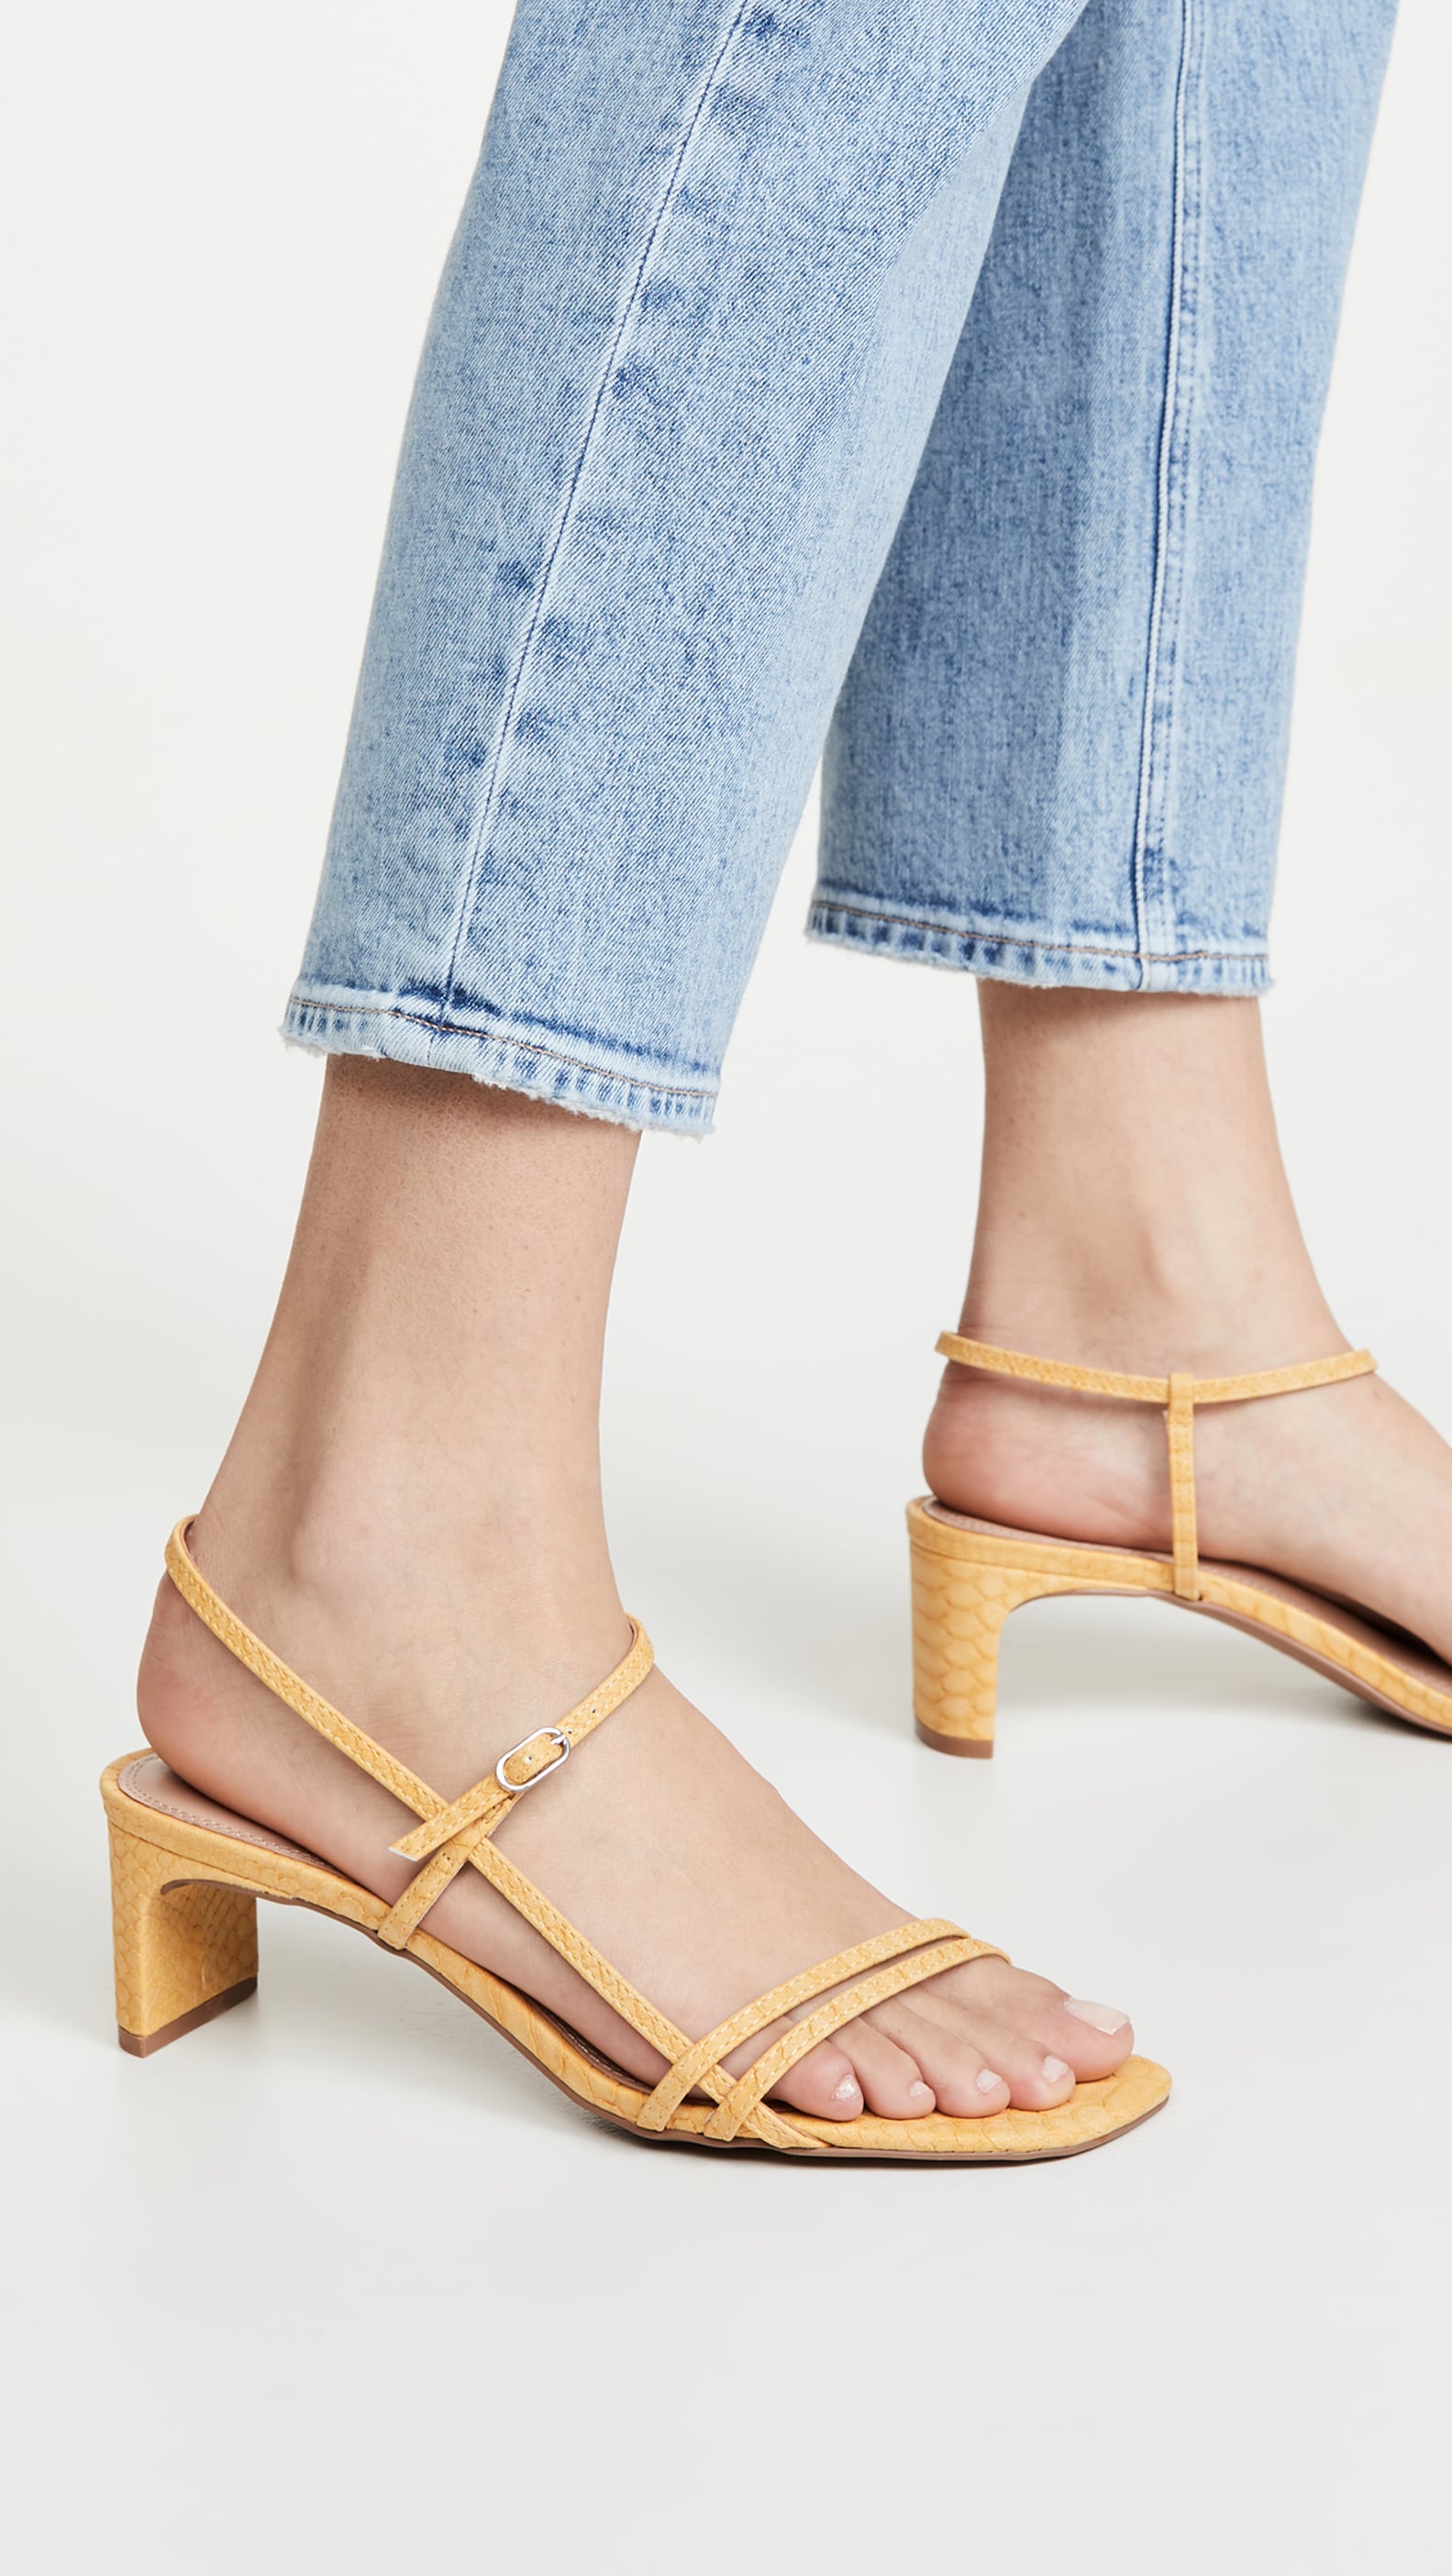 Shop the Best Heels of Spring 2020 | POPSUGAR Fashion